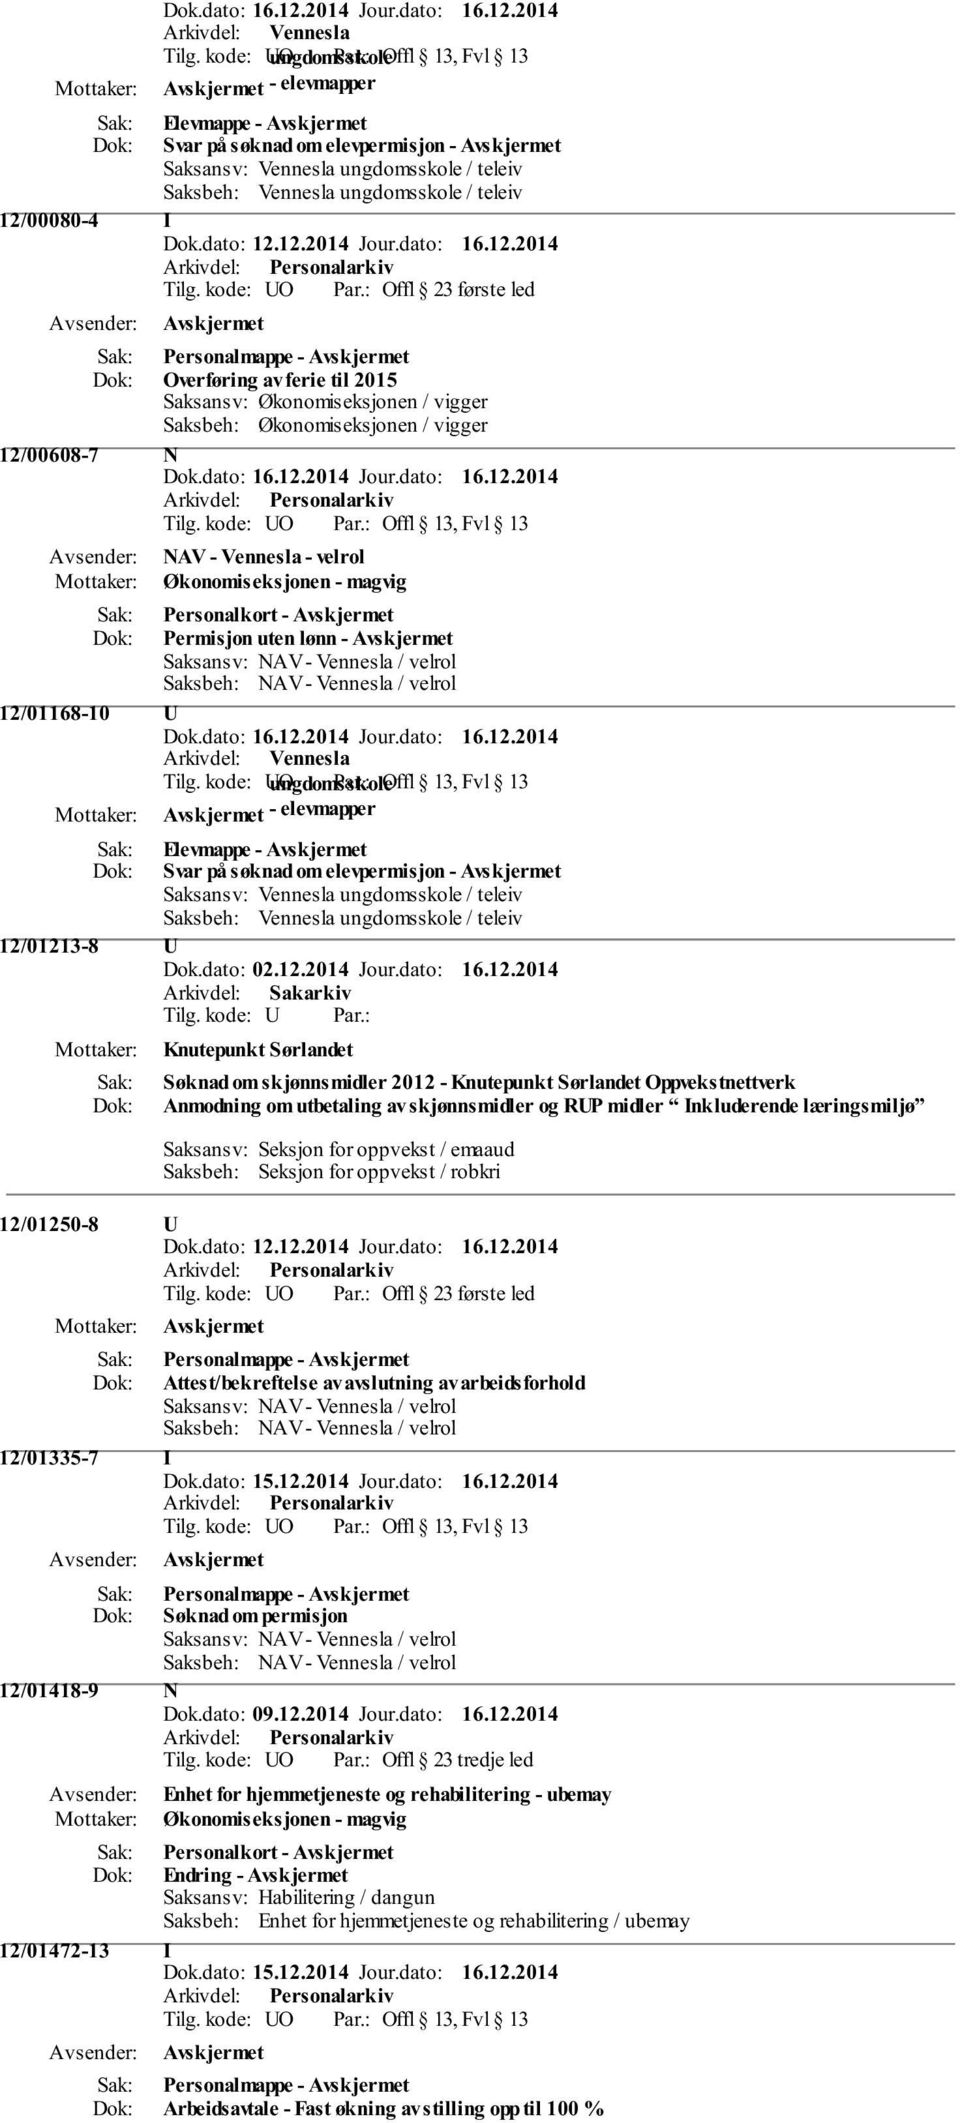 magvig Personalkort - Permisjon uten lønn - Saksansv: NAV - Vennesla / velrol Saksbeh: NAV - Vennesla / velrol 12/01168-10 U Tilg.